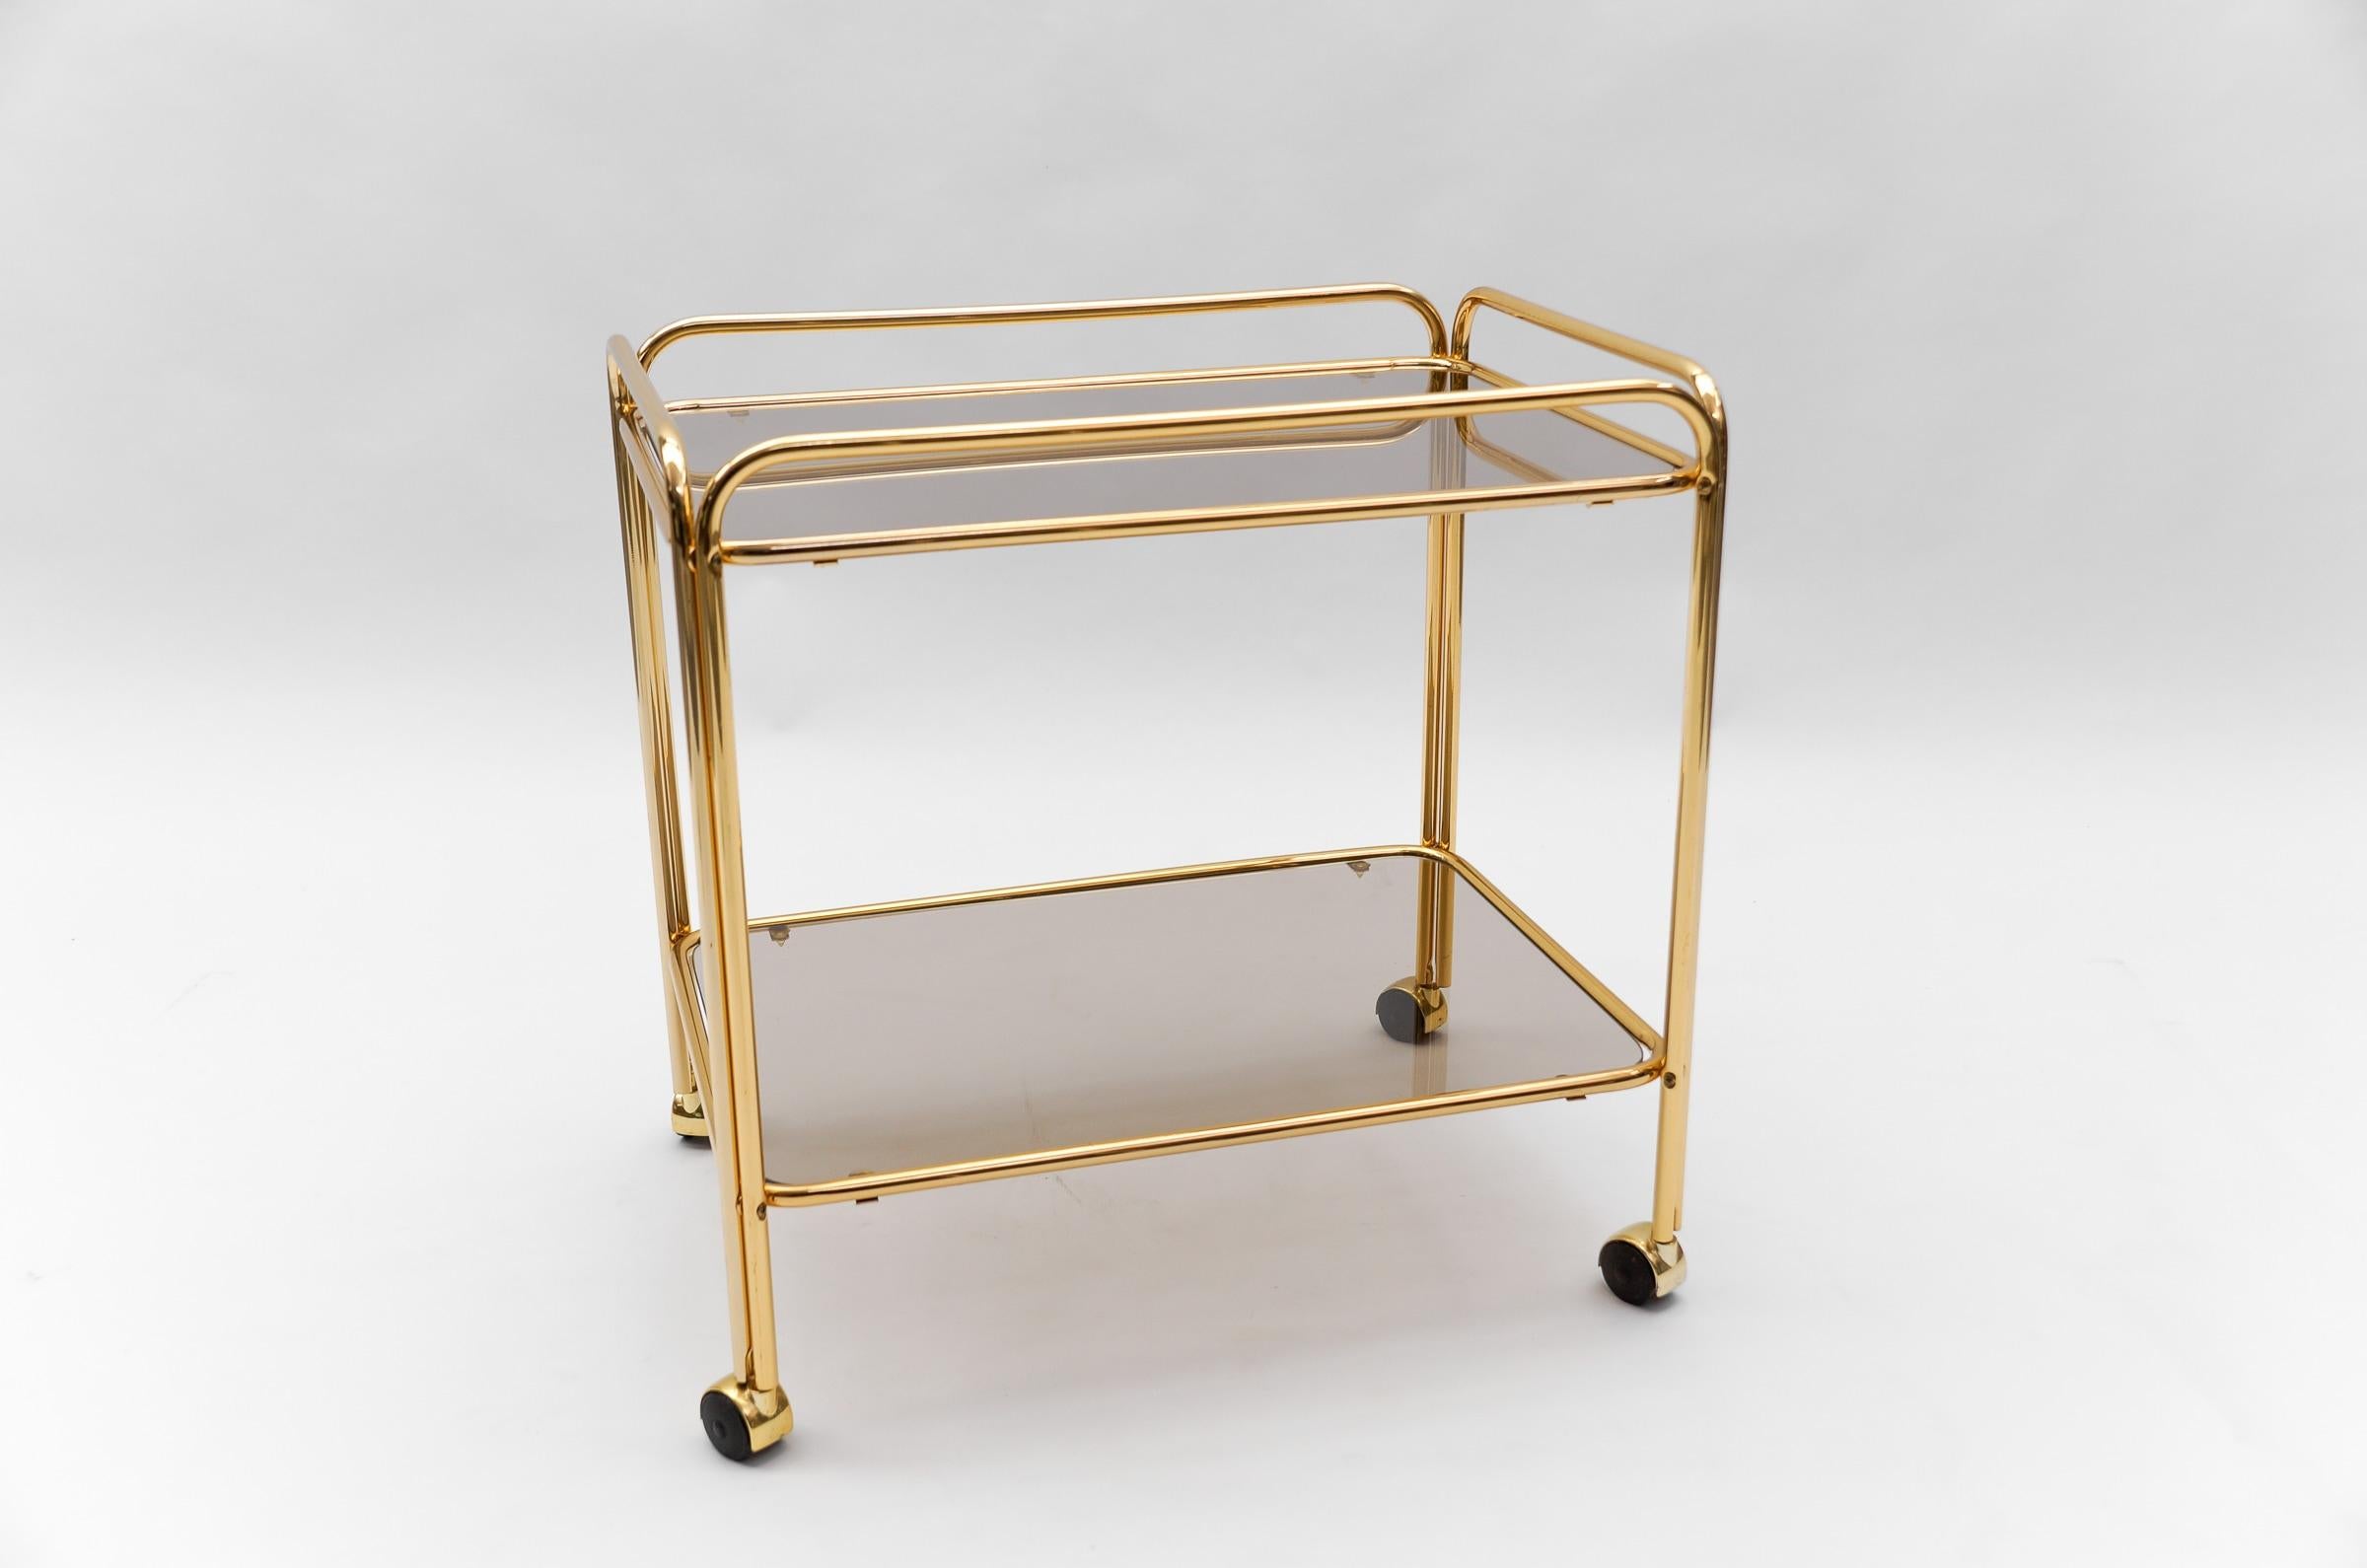  Lovely Elegant Mid-Century Modern Brass Bar Cart, 1960s, France For Sale 2